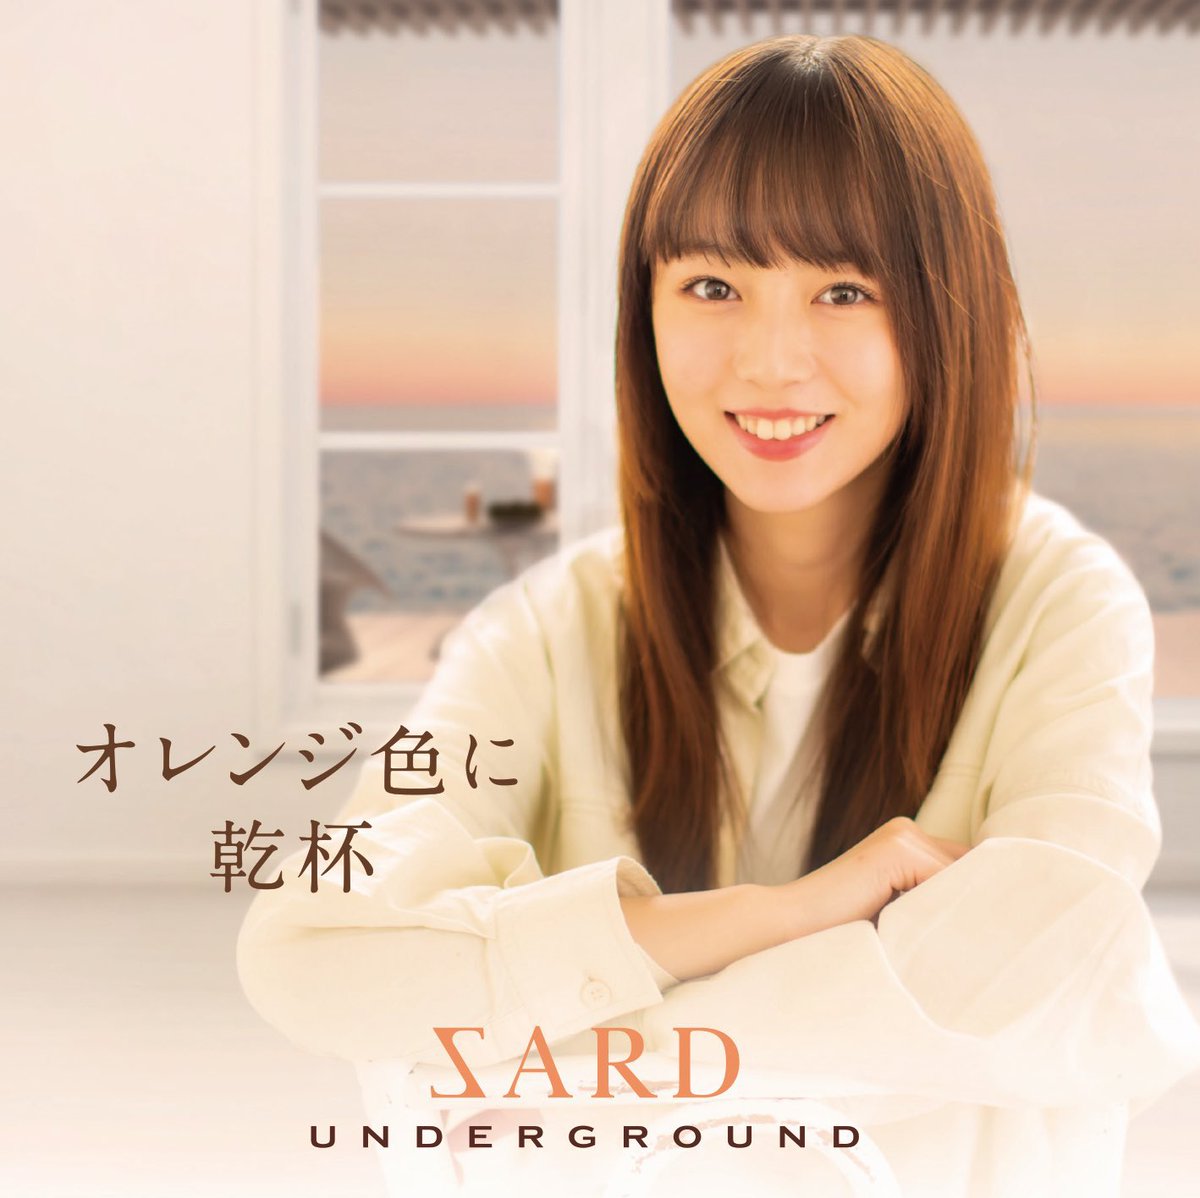 Cover for『SARD UNDERGROUND - Ano Natsu no Koi wa Mabushikute』from the release『Orange Iro ni Kanpai』